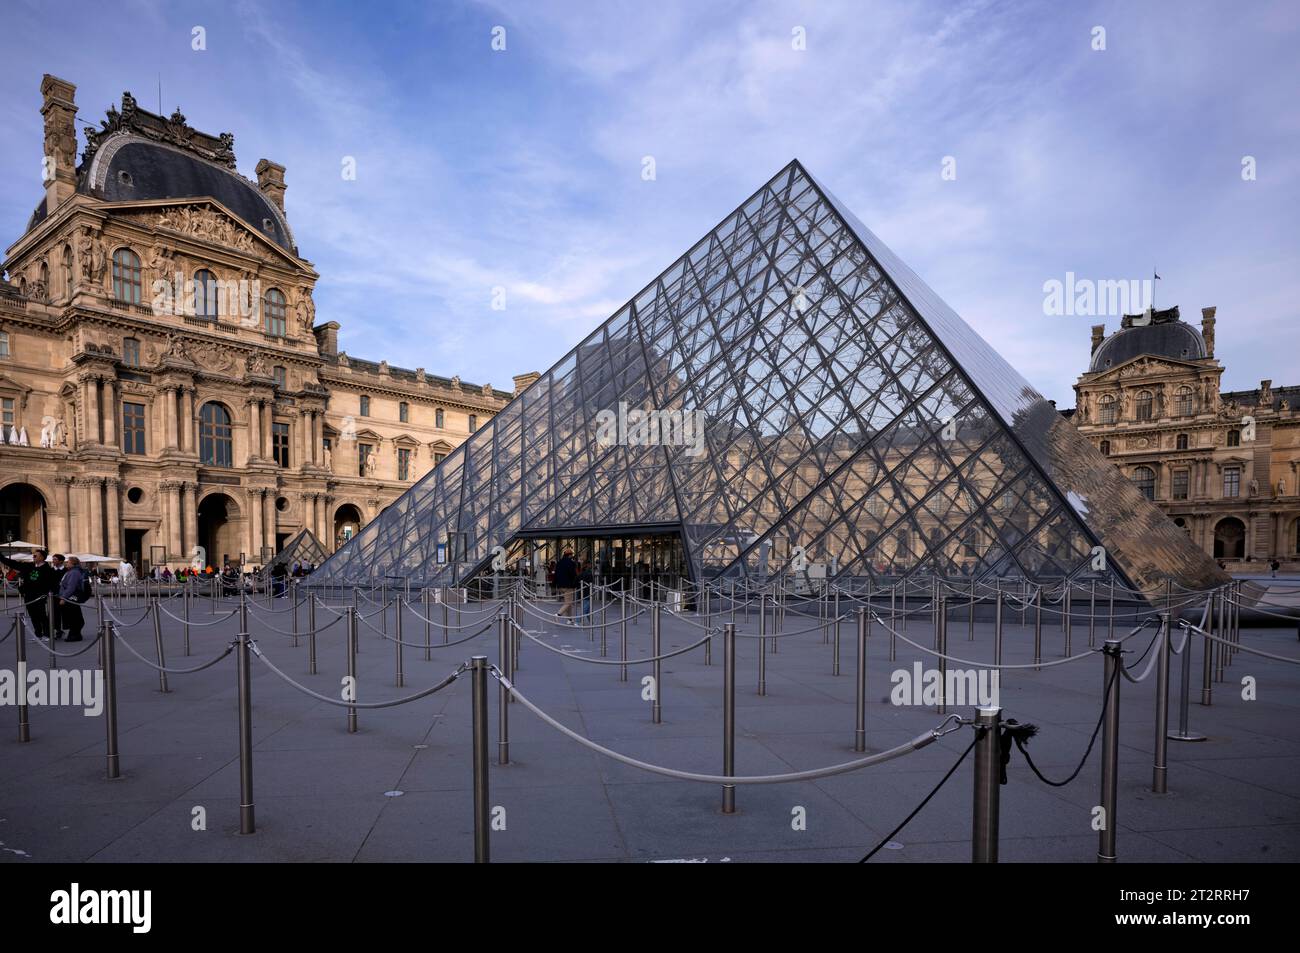 Sistema di guida persone per incanalare la coda, vuoto, Pavillon Richelieu, piramide di ingresso in vetro, Palais du Louvre, Parigi, Francia Foto Stock